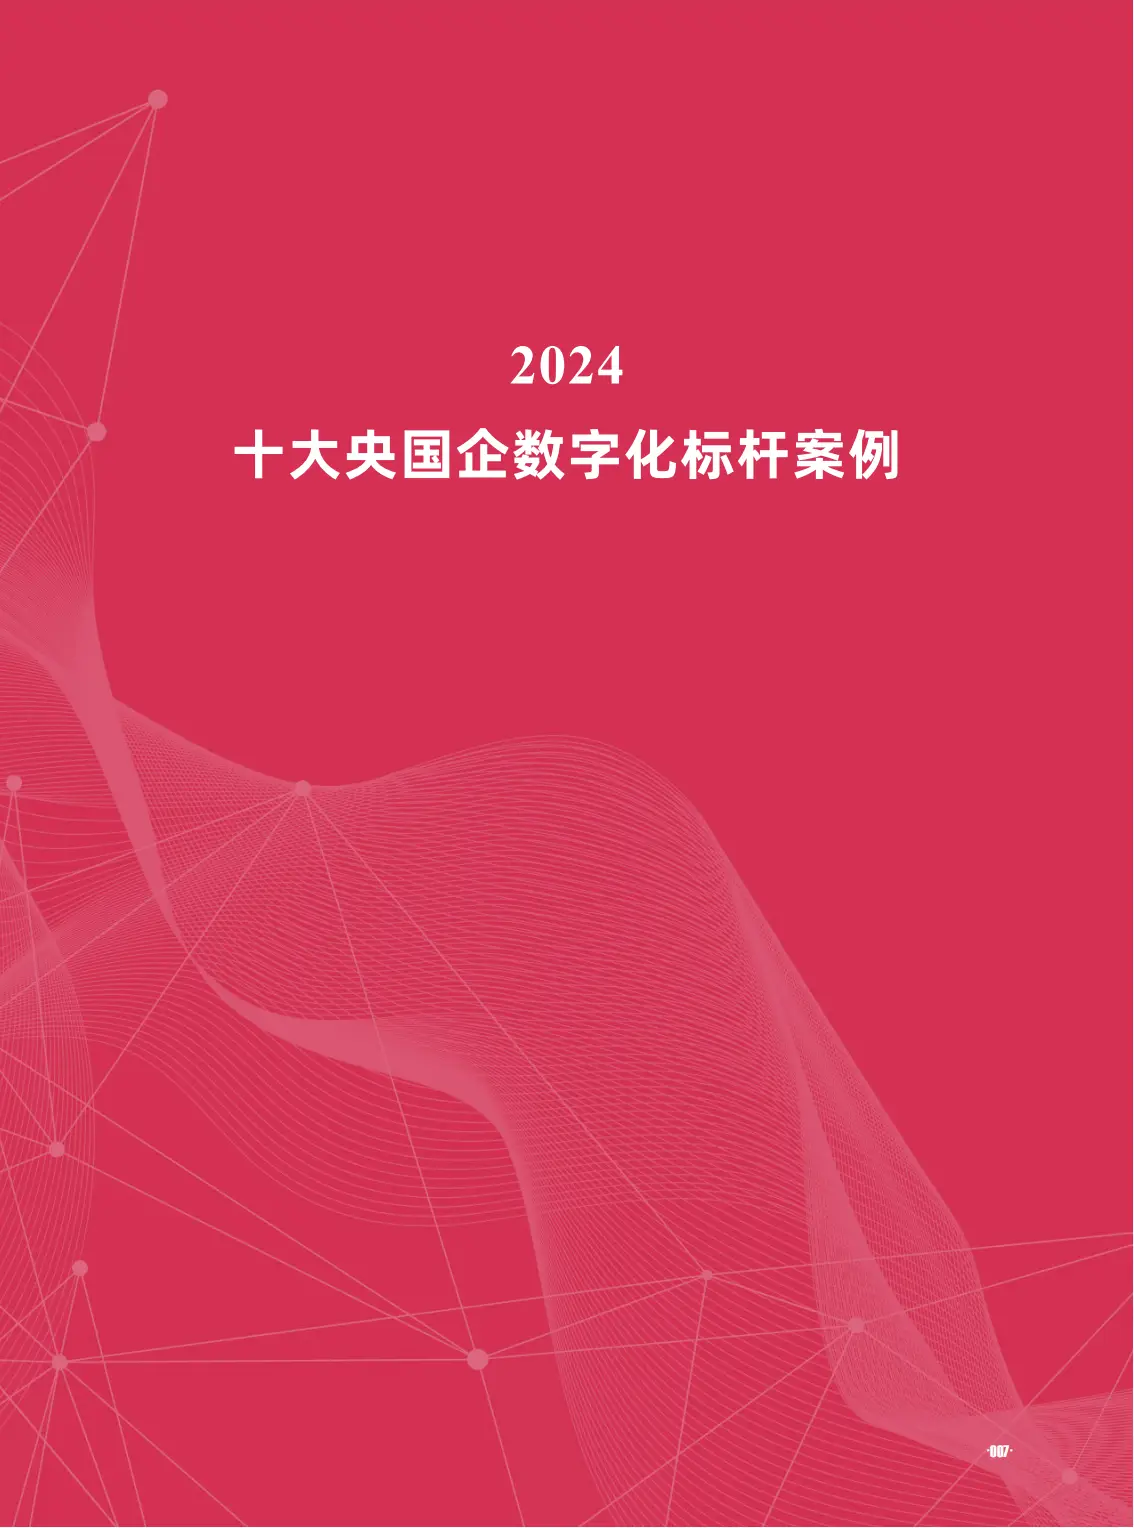 深入了解岳阳市 5G 智能手机项目研发实施过程，感受新兴科技福利  第2张